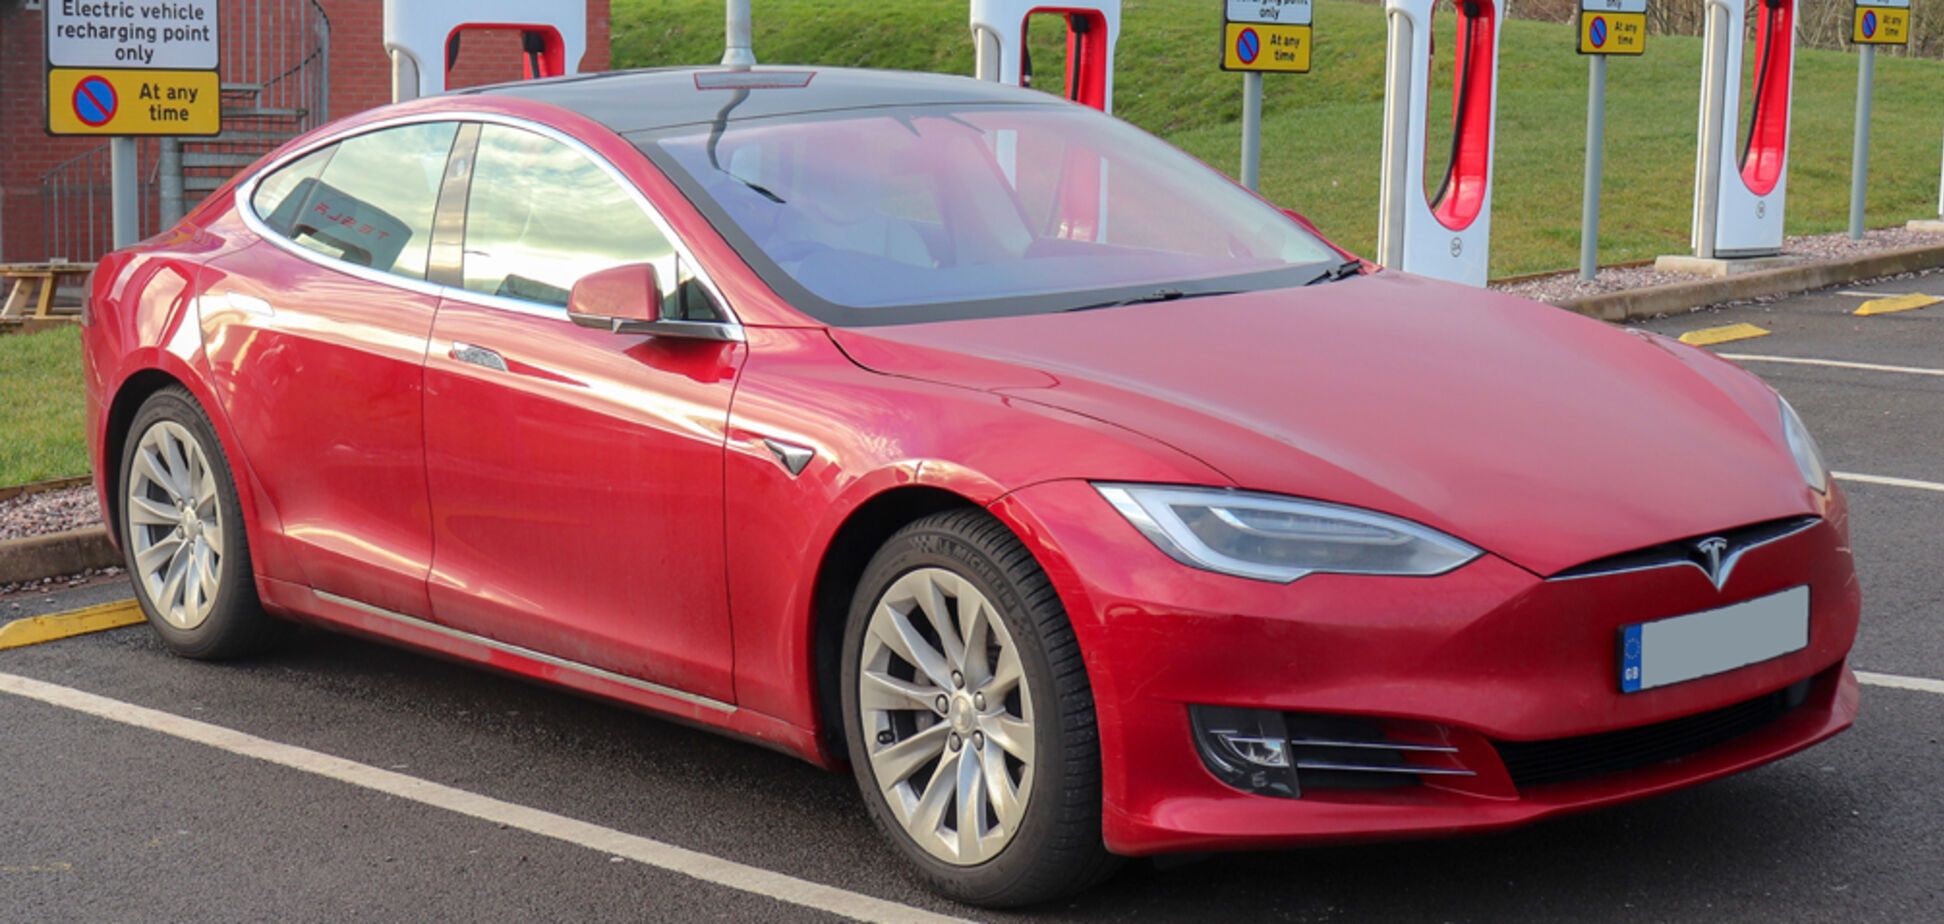 Tesla Model S з пробігом 365 000 км: власник розповів про витрати за 4 роки експлуатації